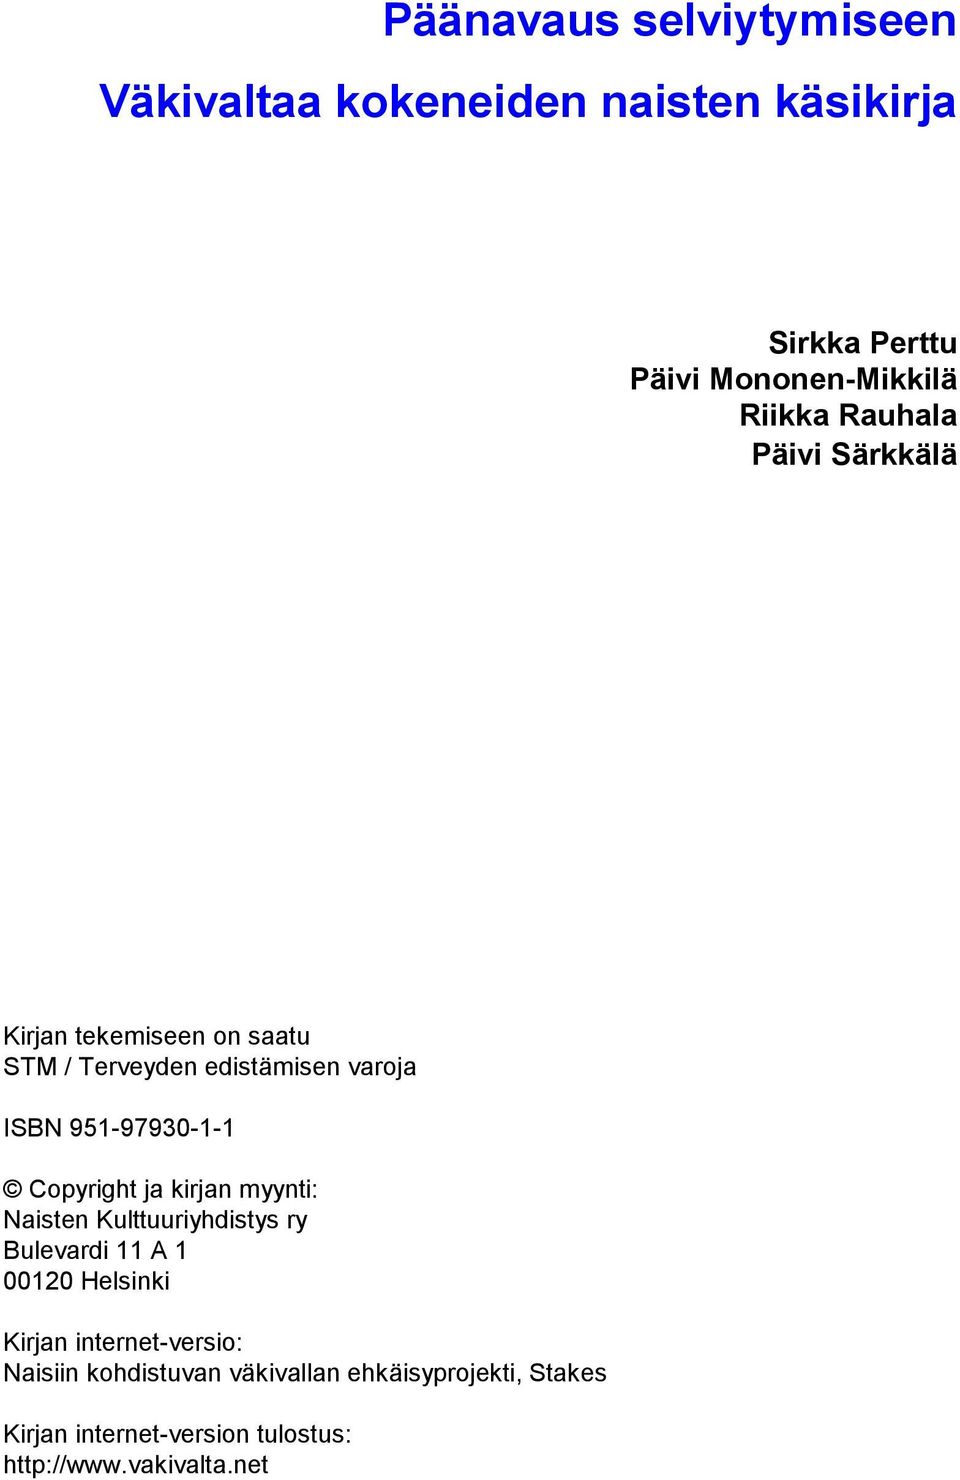 Copyright ja kirjan myynti: Naisten Kulttuuriyhdistys ry Bulevardi 11 A 1 00120 Helsinki Kirjan